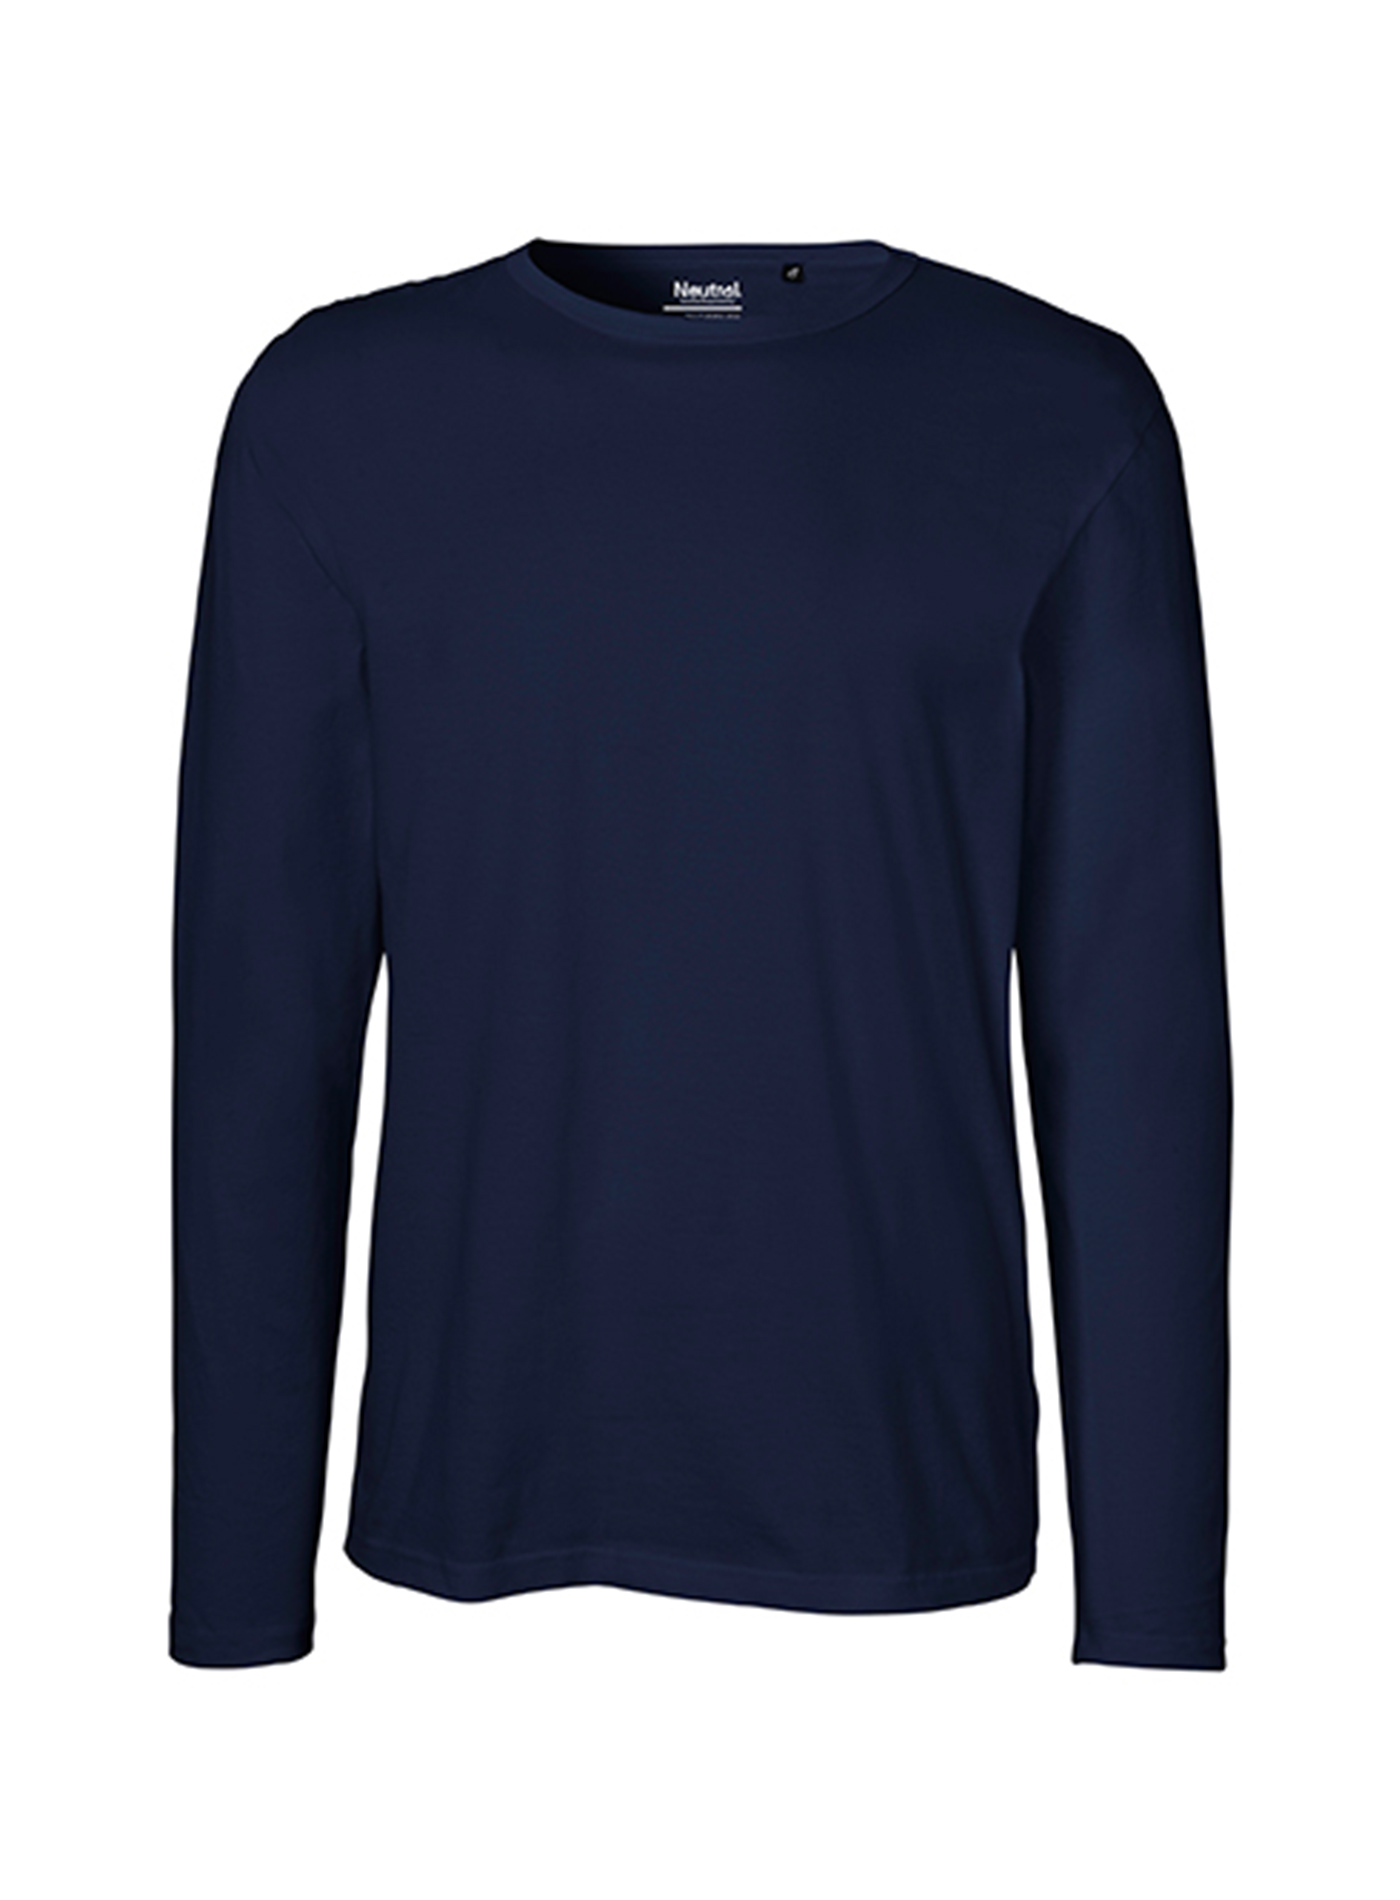 Pánské tričko s dlouhým rukávem Neutral - Námořní modrá XL